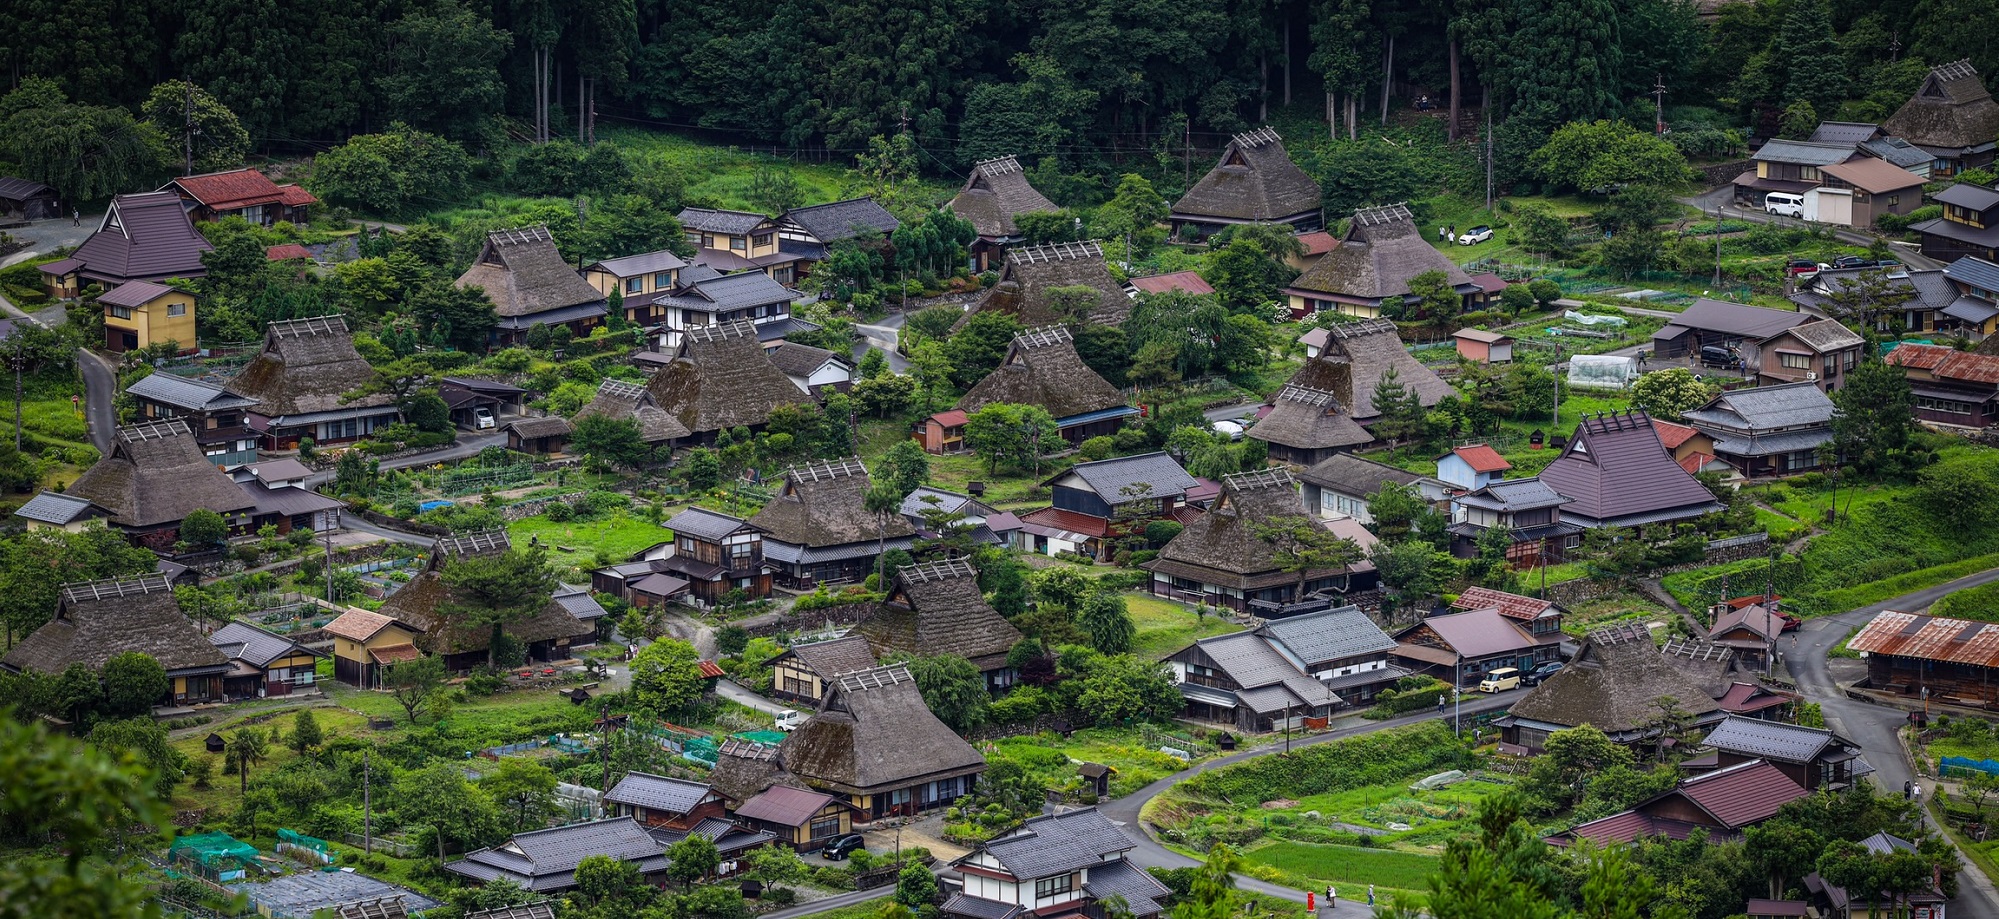 京都 美山ナビ | 日本の原風景が残る京都・美山町の観光情報サイト